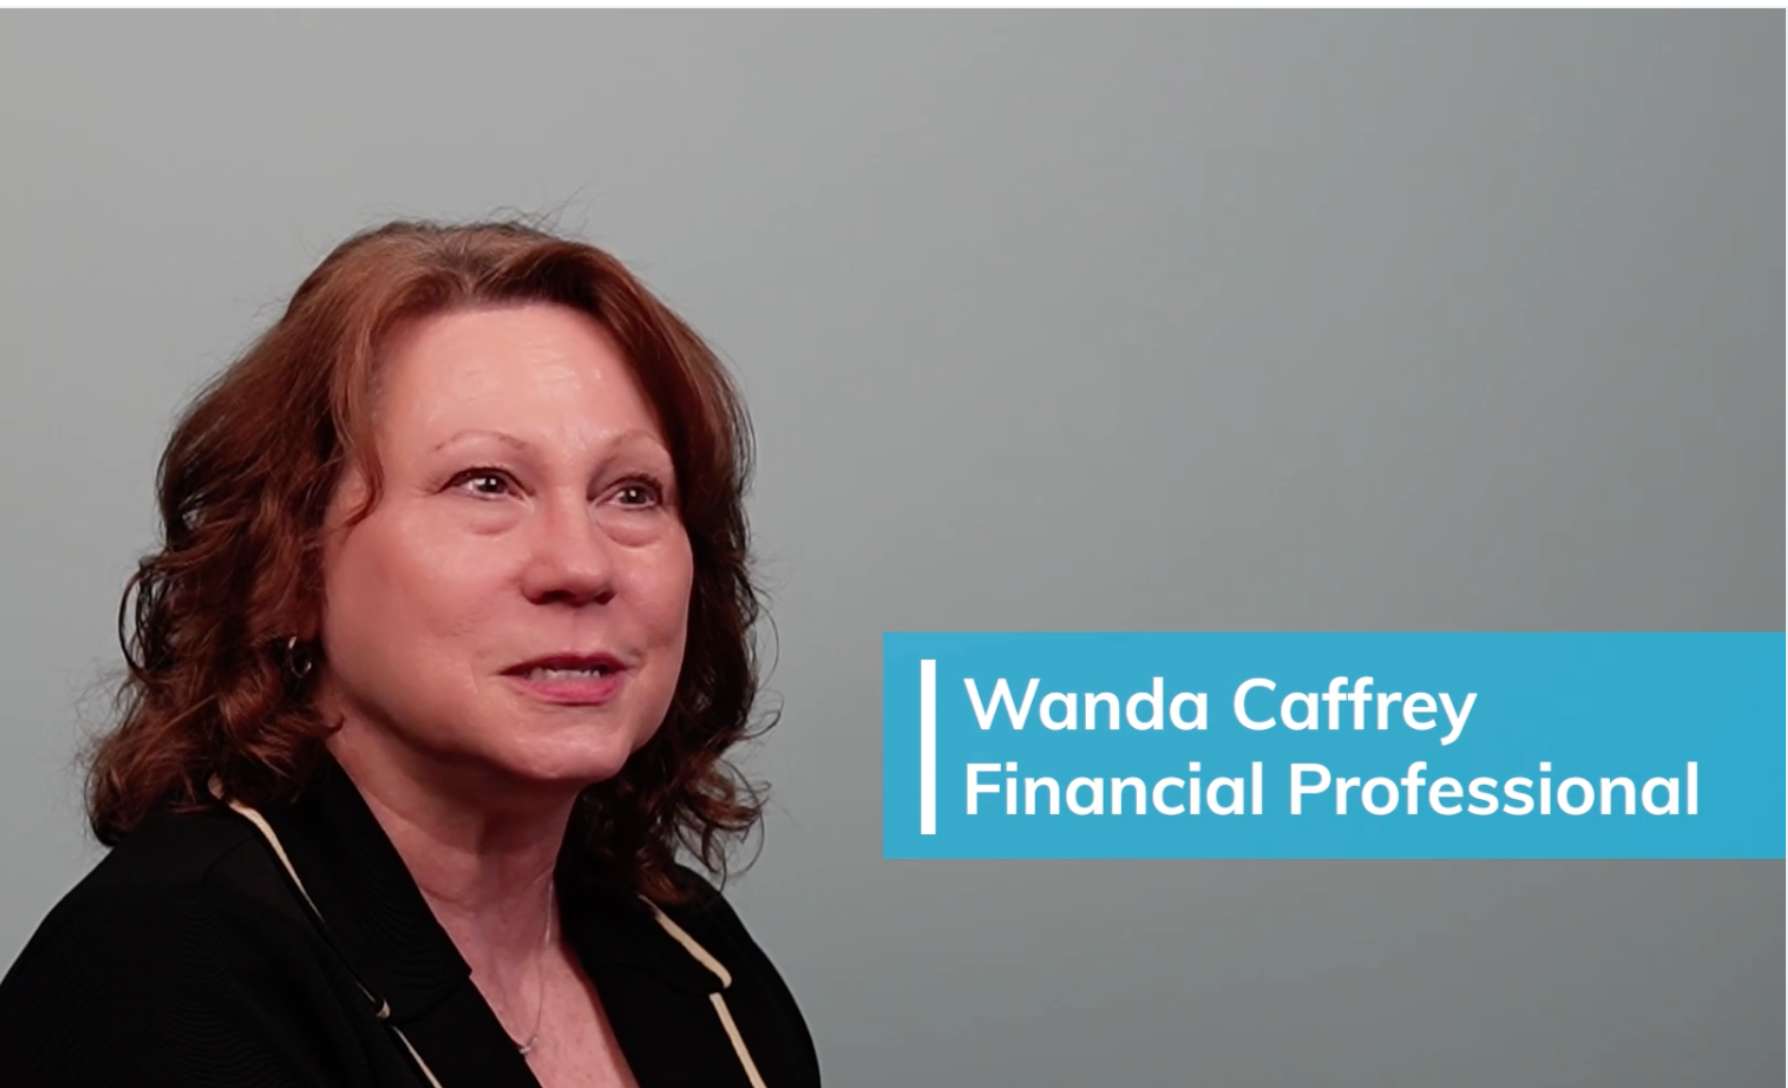 WandaCaffrey_FinancialProfessional